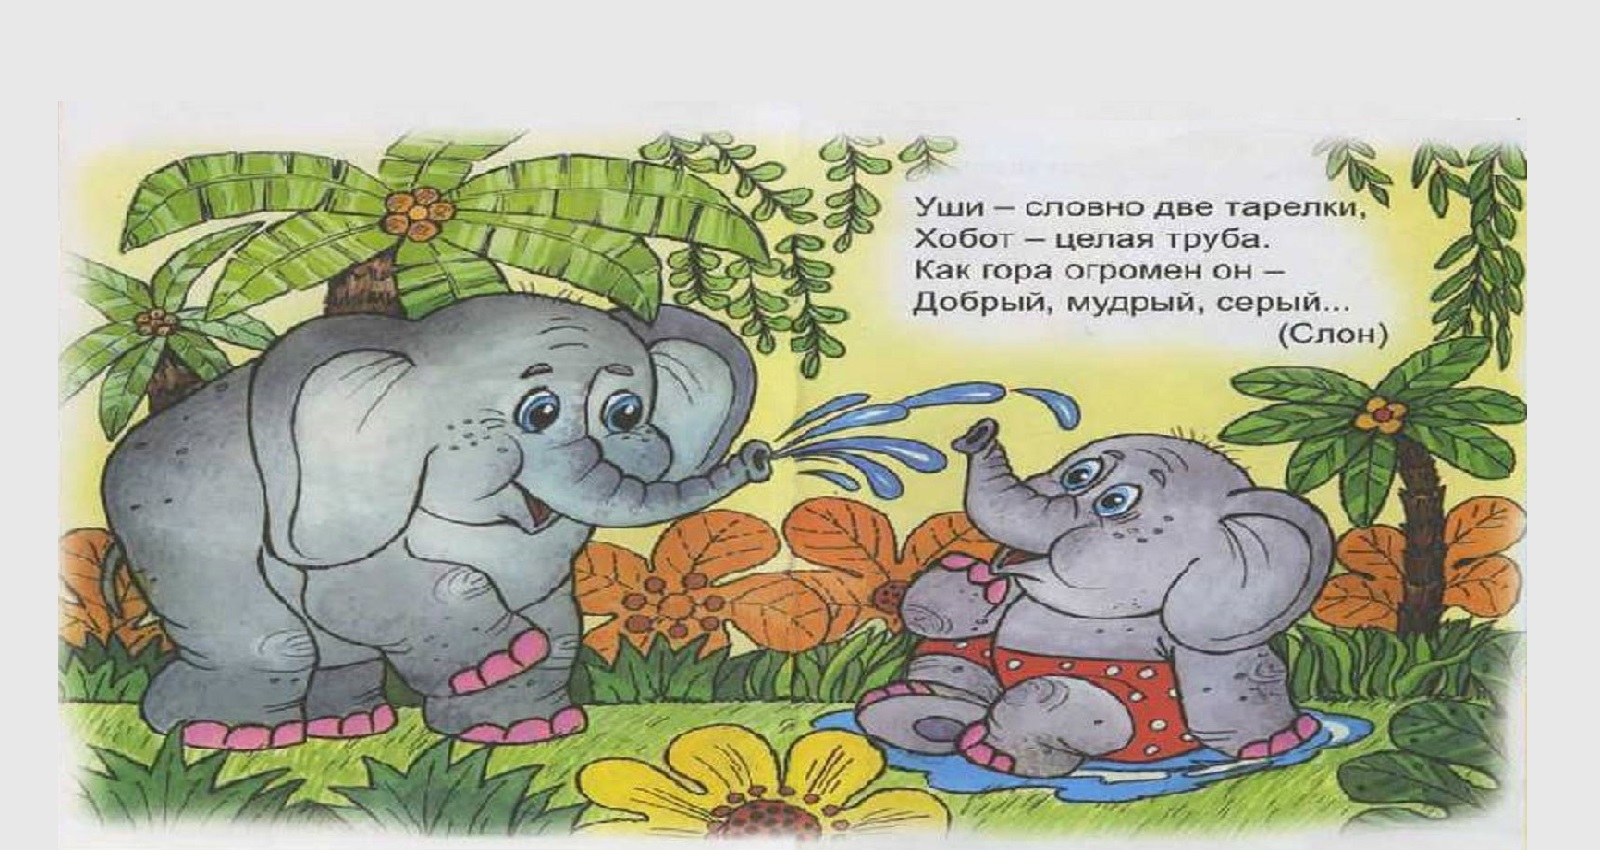 Загадки Про слона для детей | Загадки с ответами